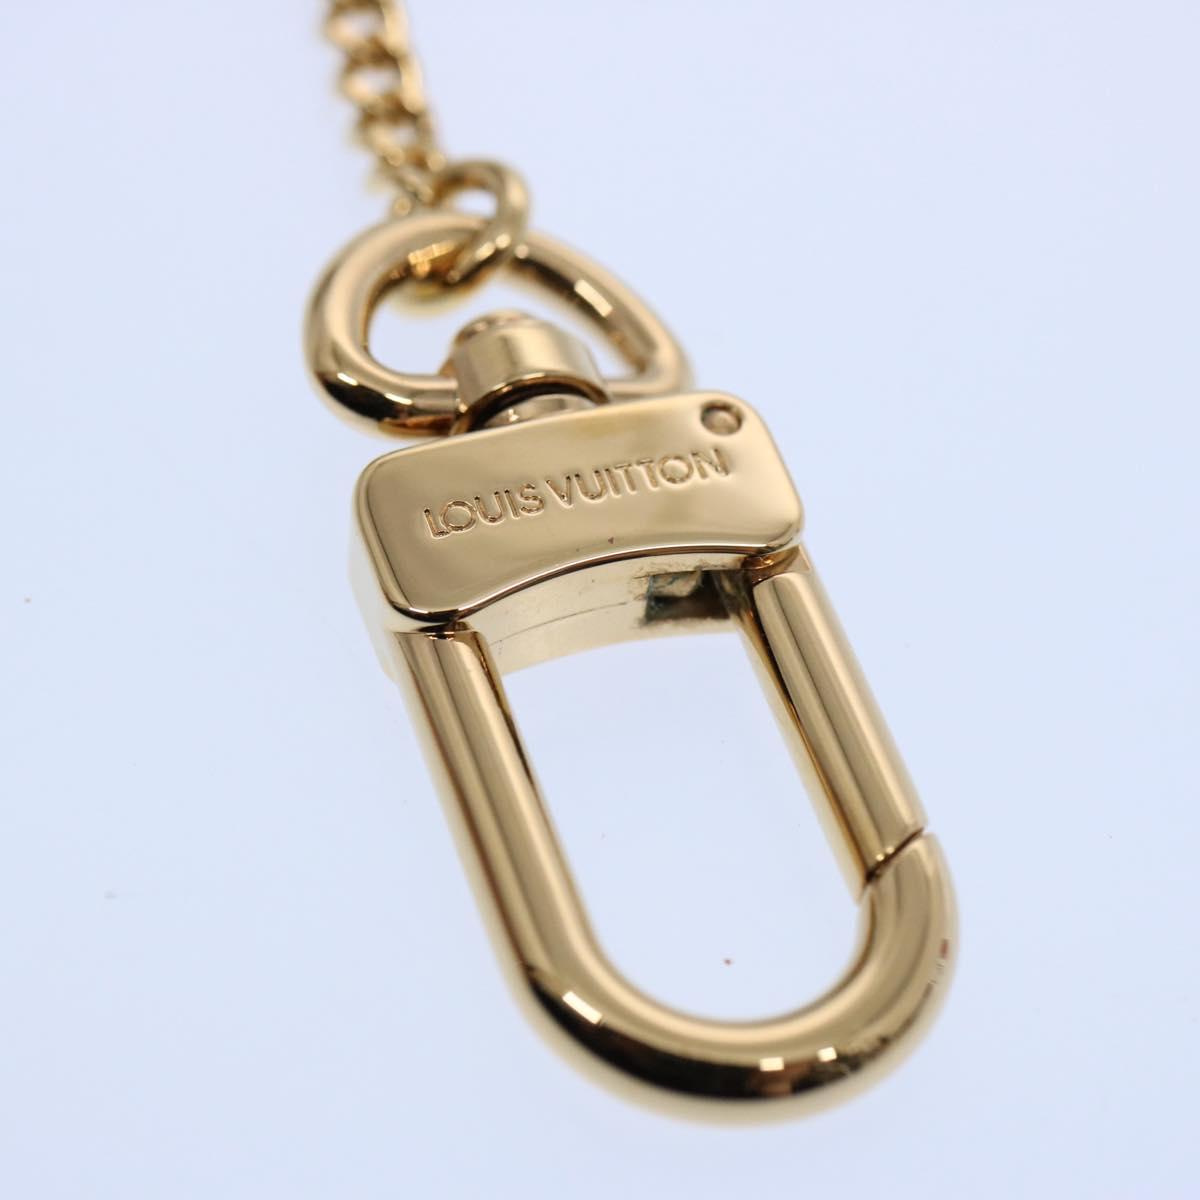 LOUIS VUITTON Chainne Anneau Cles Key Ring Gold Tone M58021 LV Auth 60613